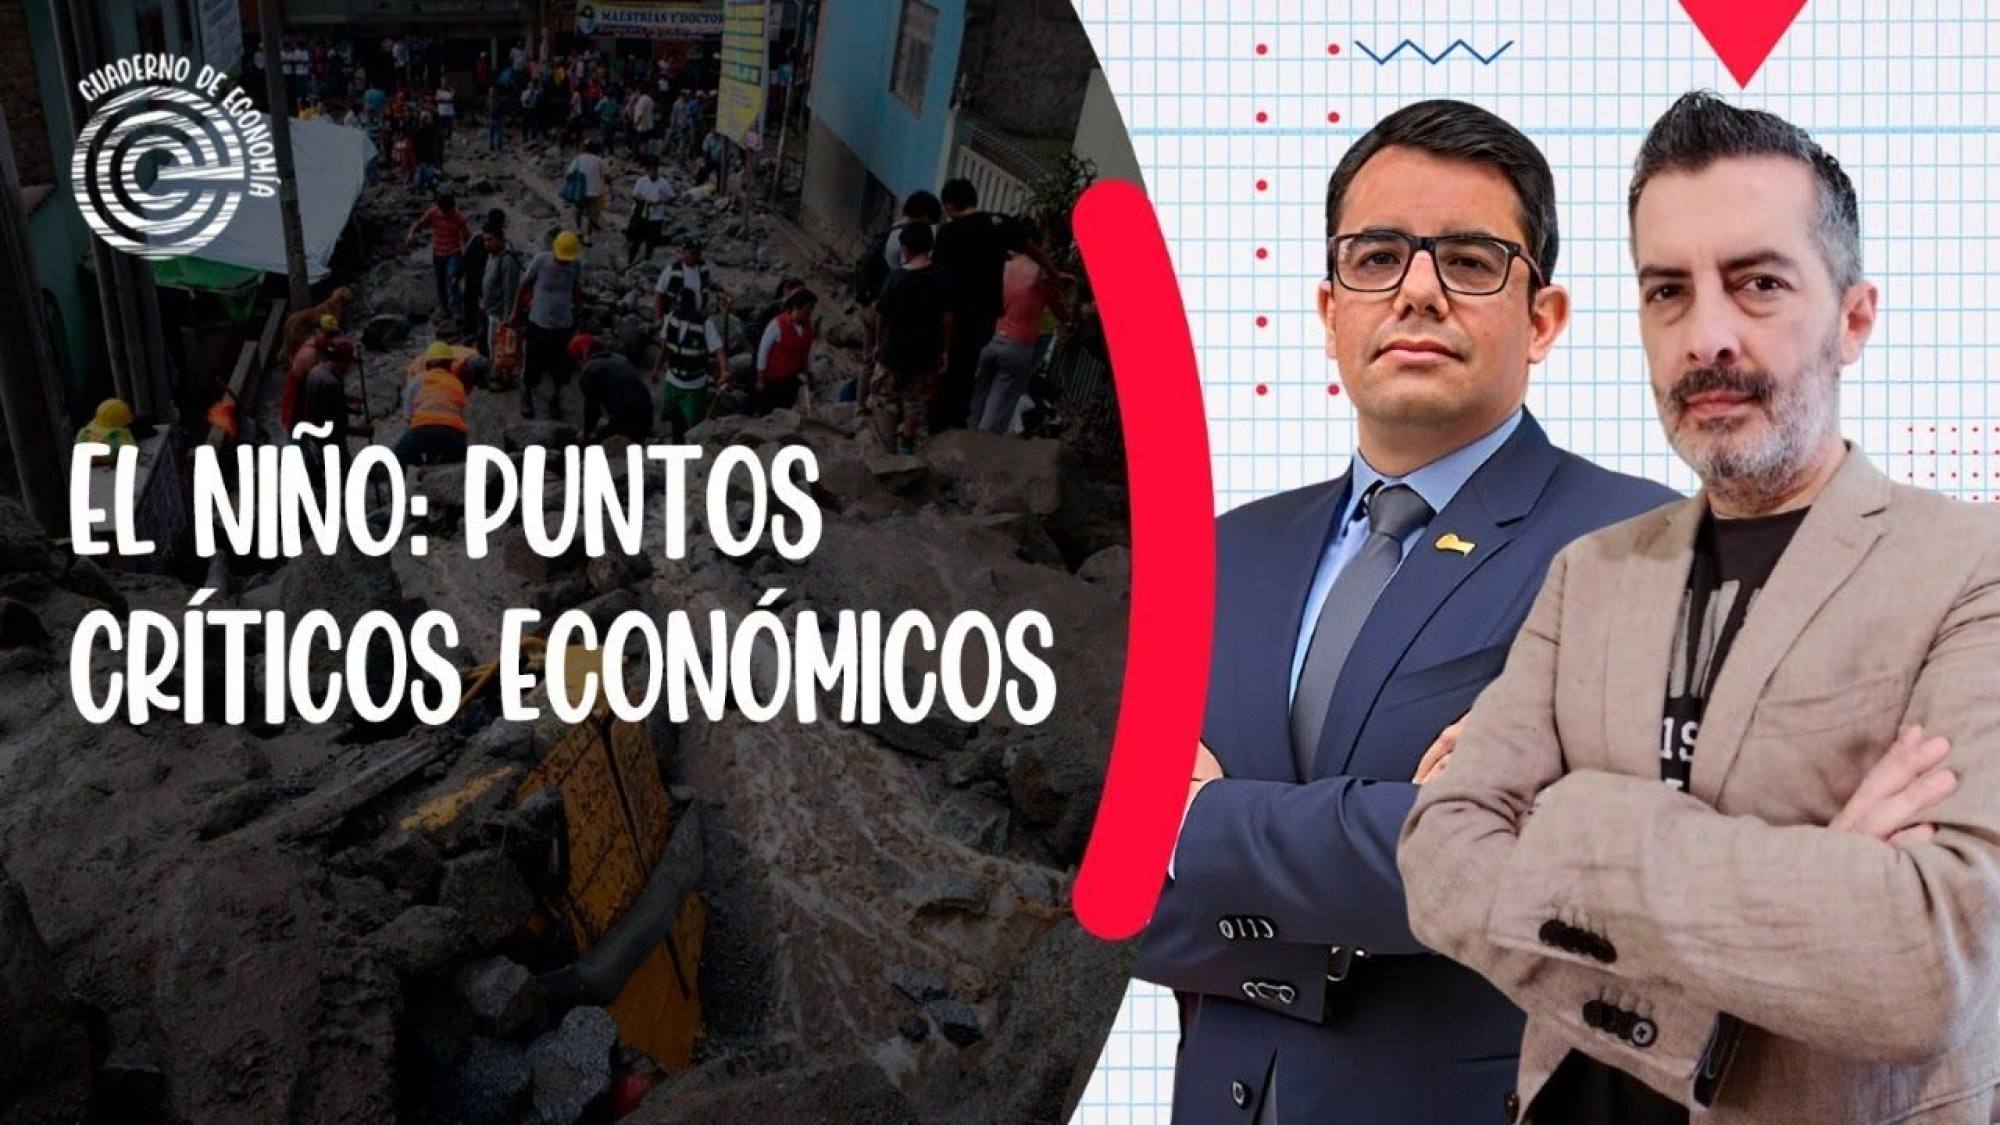 El Niño: puntos críticos económicos, Epicentro TV